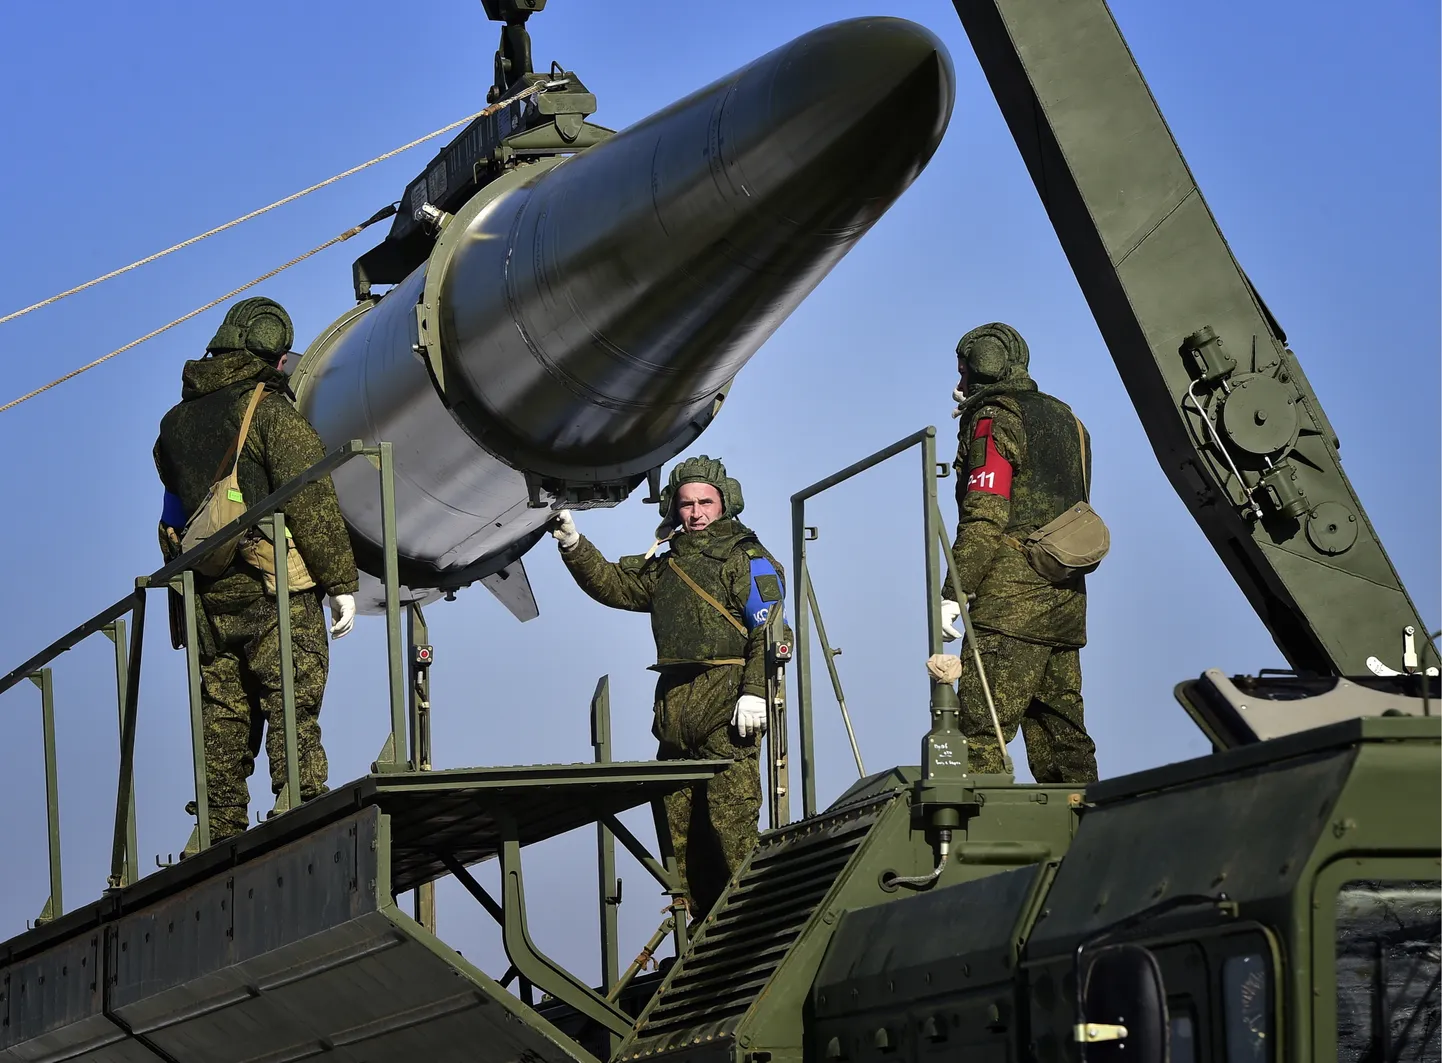 Загрузка квазибаллистической ракеты в ракетную установку "Искандер-М" во время учений ракетно-артиллерийских частей 5-й армии Восточного военного округа России на полигоне в Уссурийске, 2016 год.